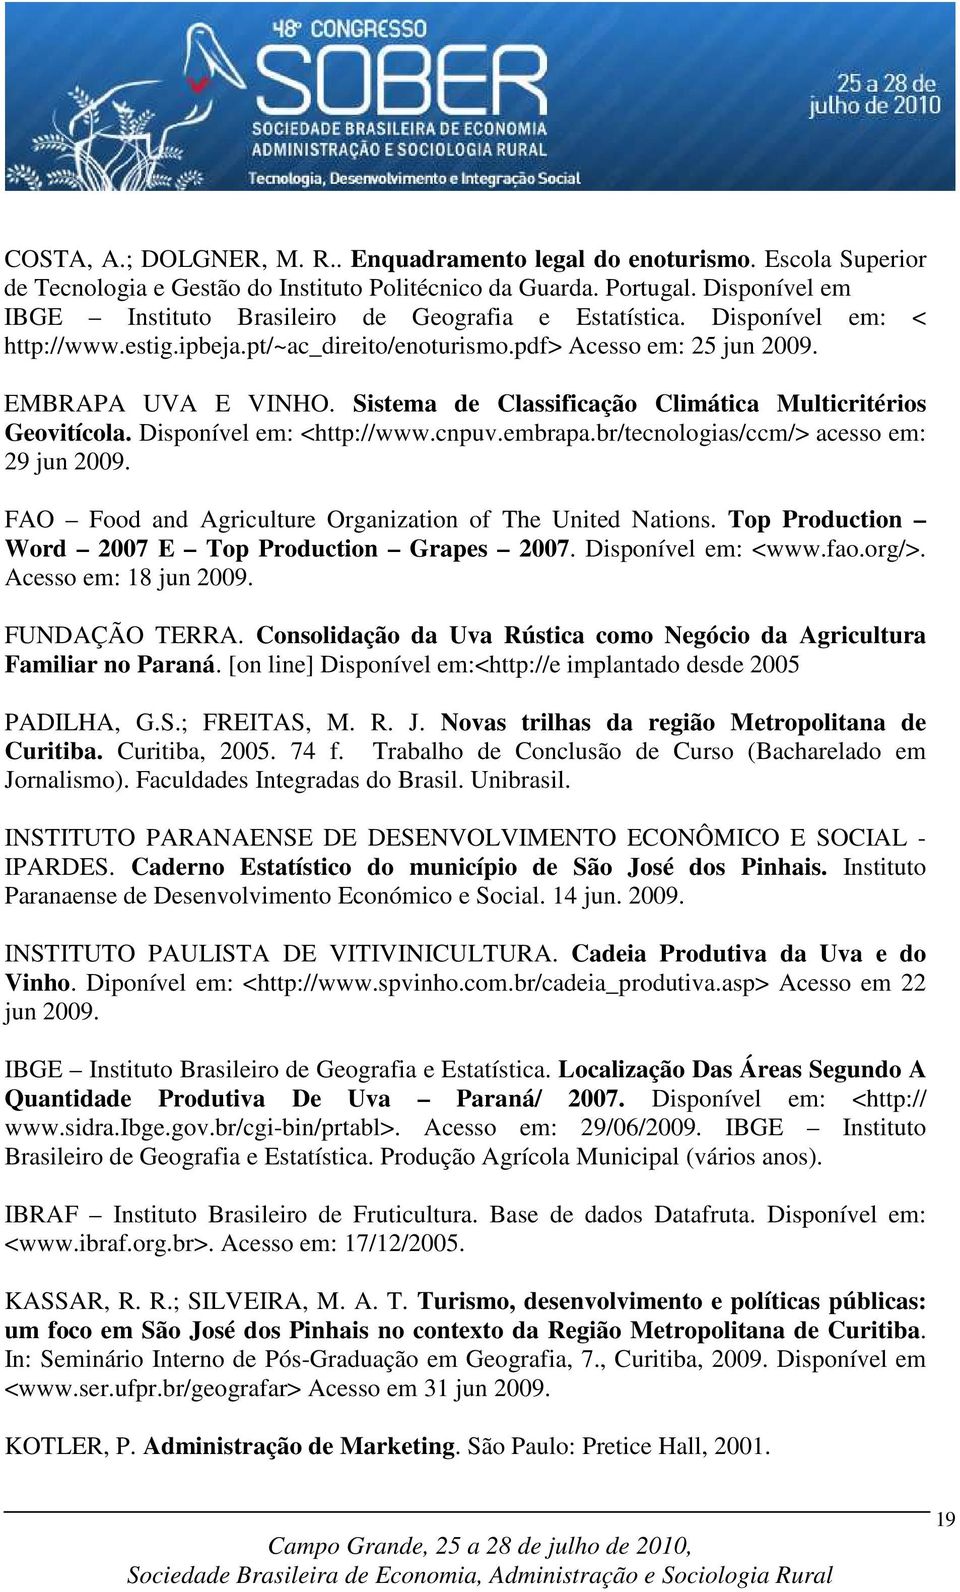 Sistema de Classificação Climática Multicritérios Geovitícola. Disponível em: <http://www.cnpuv.embrapa.br/tecnologias/ccm/> acesso em: 29 jun 2009.